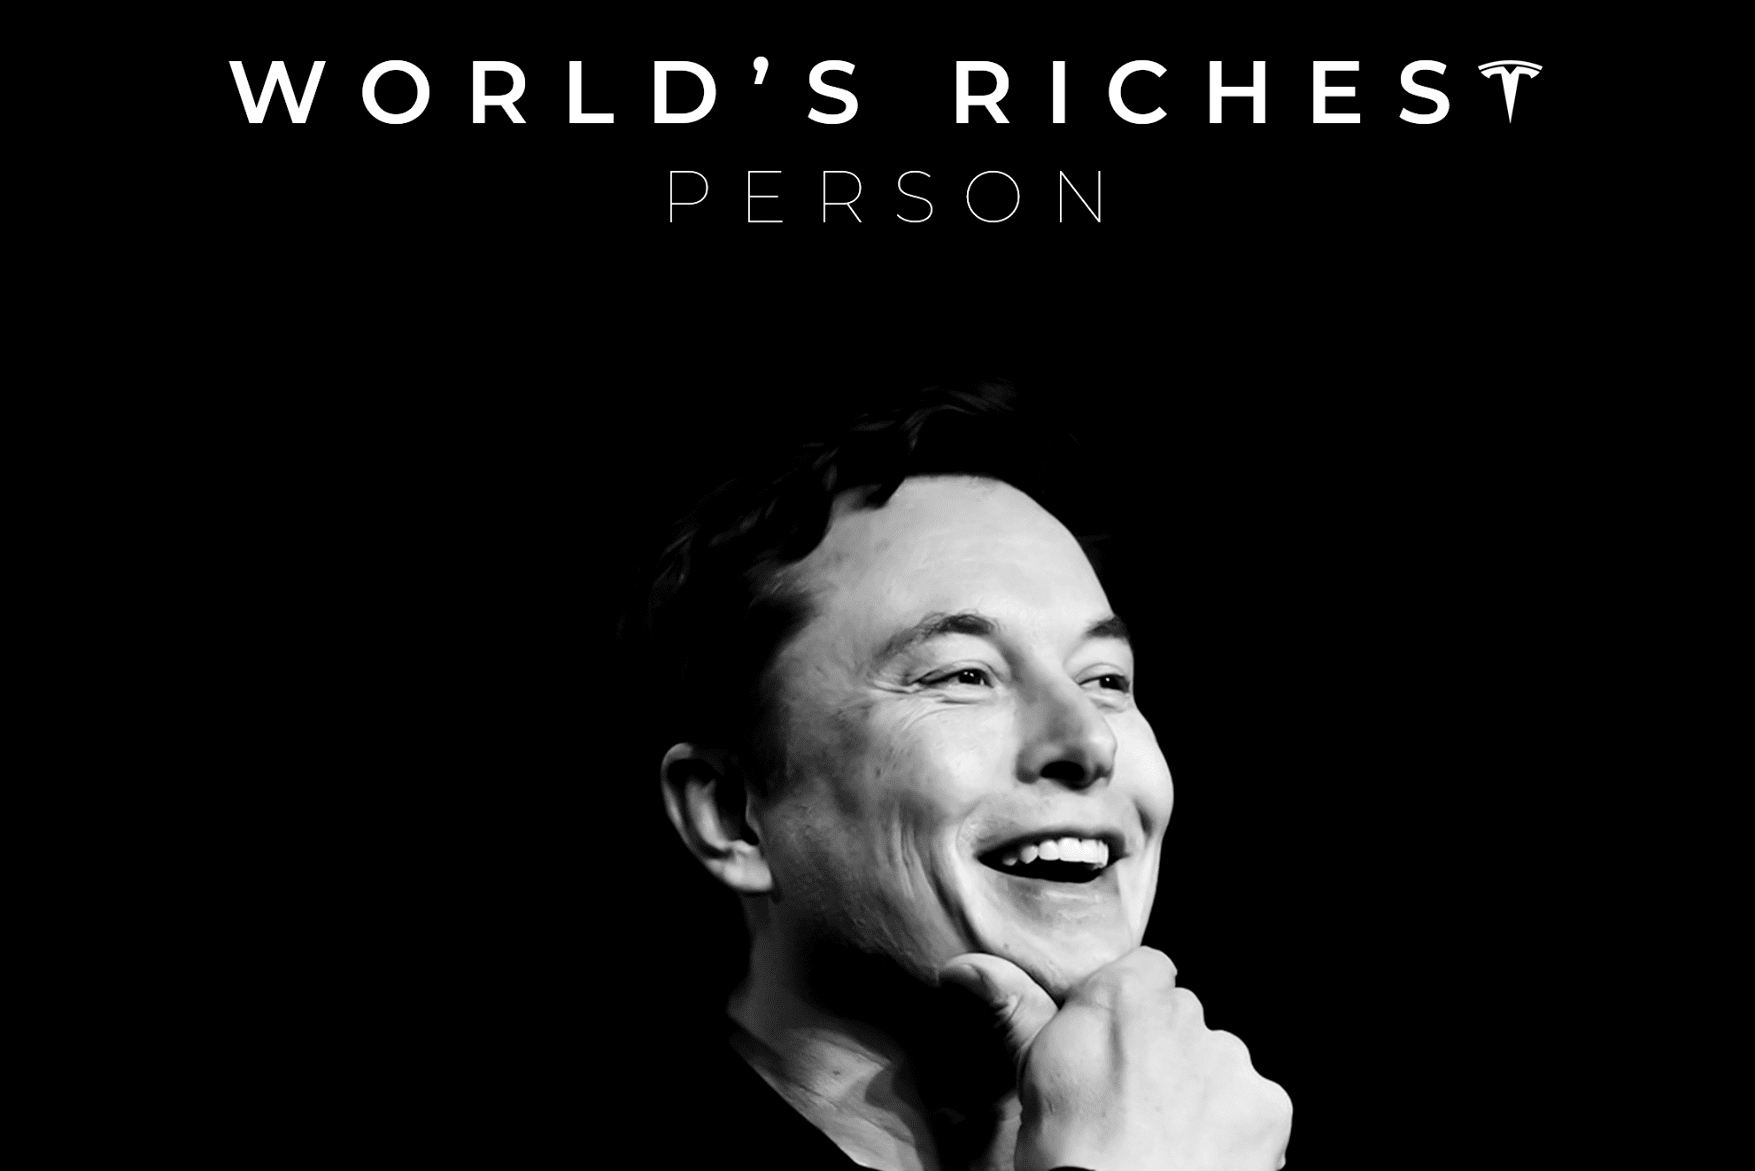 Elon Musk hiện là người giàu nhất thế giới